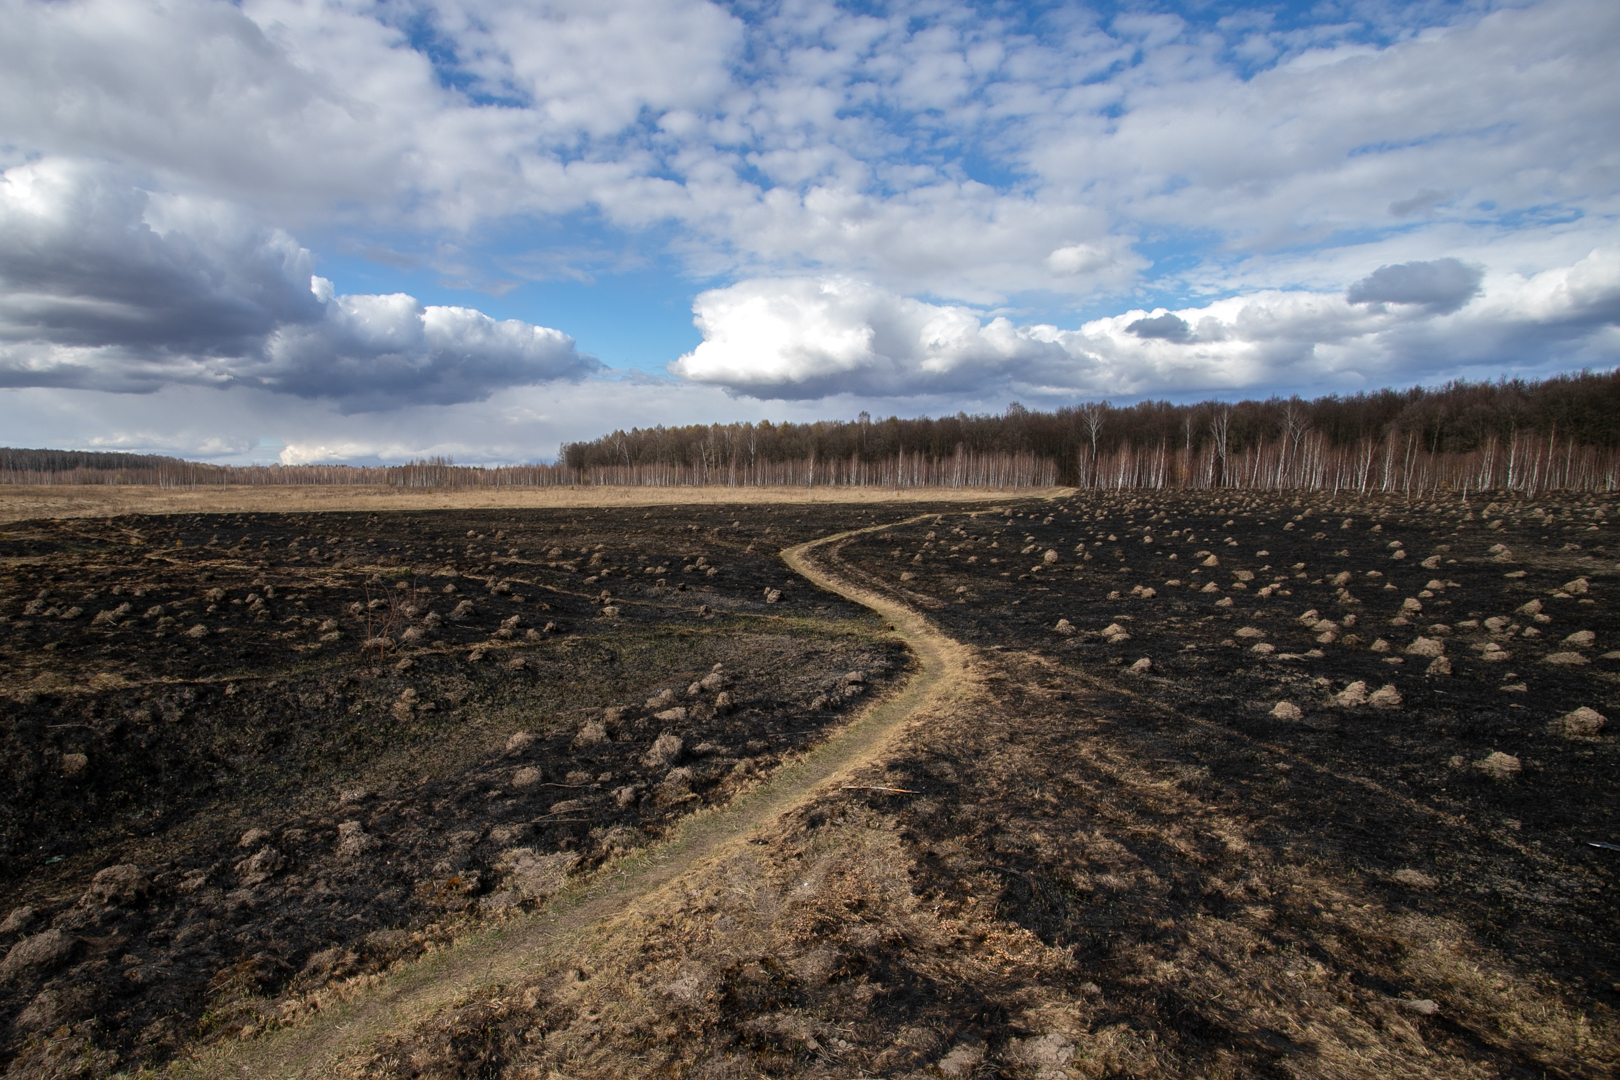 МЧС России спрогнозировало наступление пожароопасного периода в Тульской области в первую декаду апреля